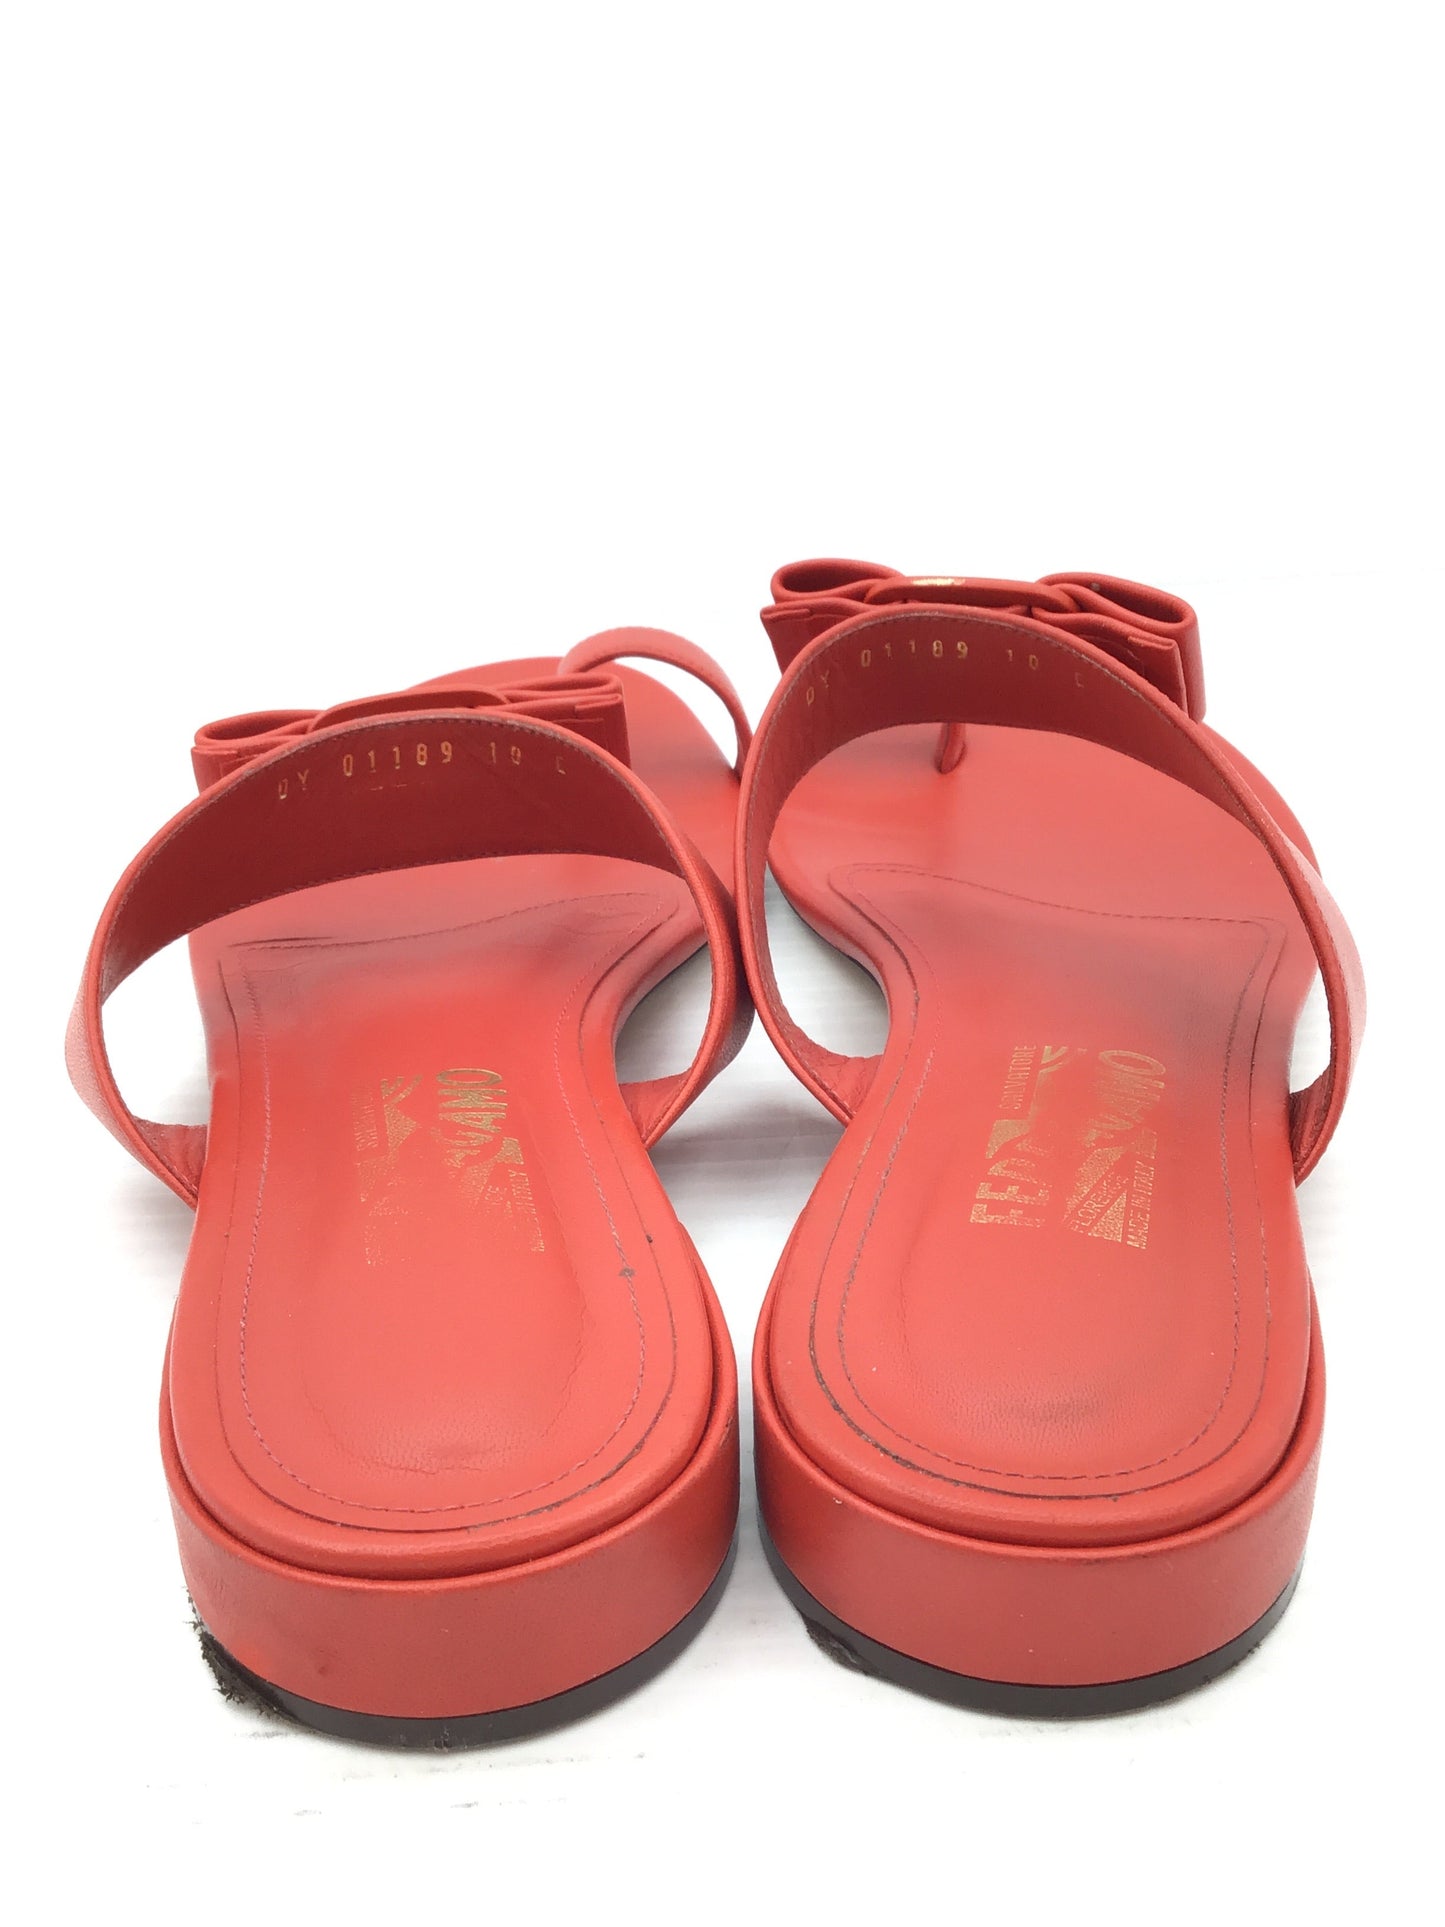 Sandals Luxury Designer By Ferragamo  Size: 10